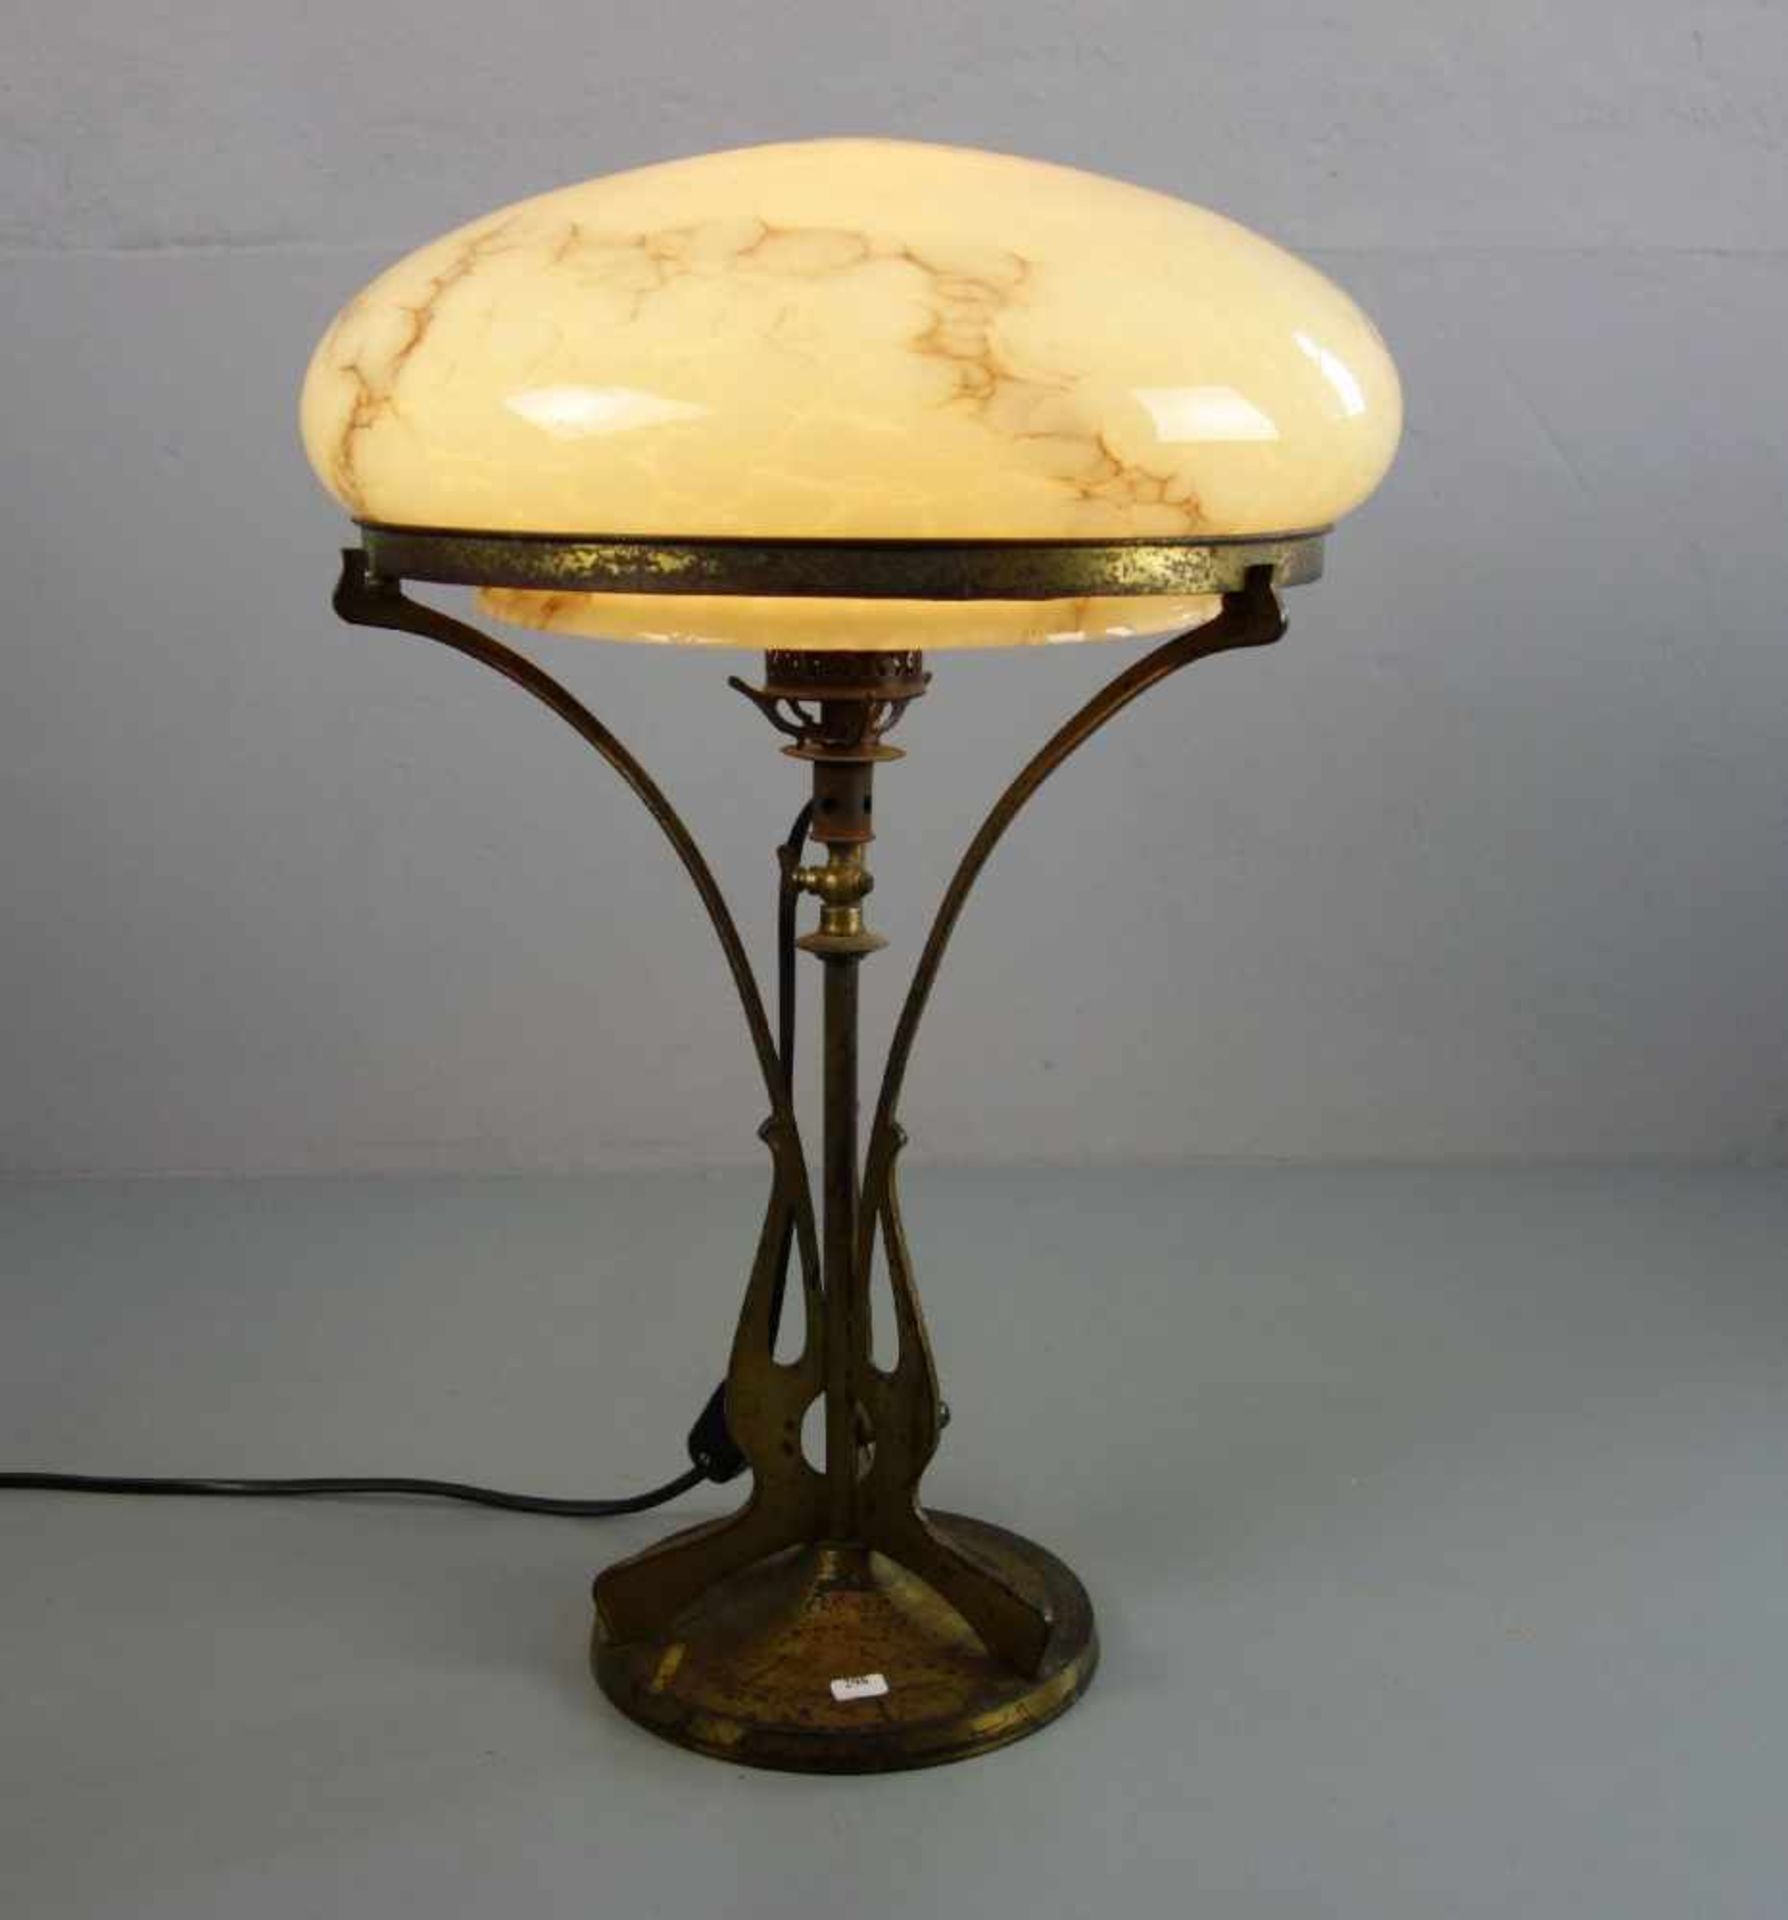 JUGENDSTIL - LAMPE / TISCHLAMPE / art nouveau lamp, um 1900. Messingfarbenes Metall, einflammig